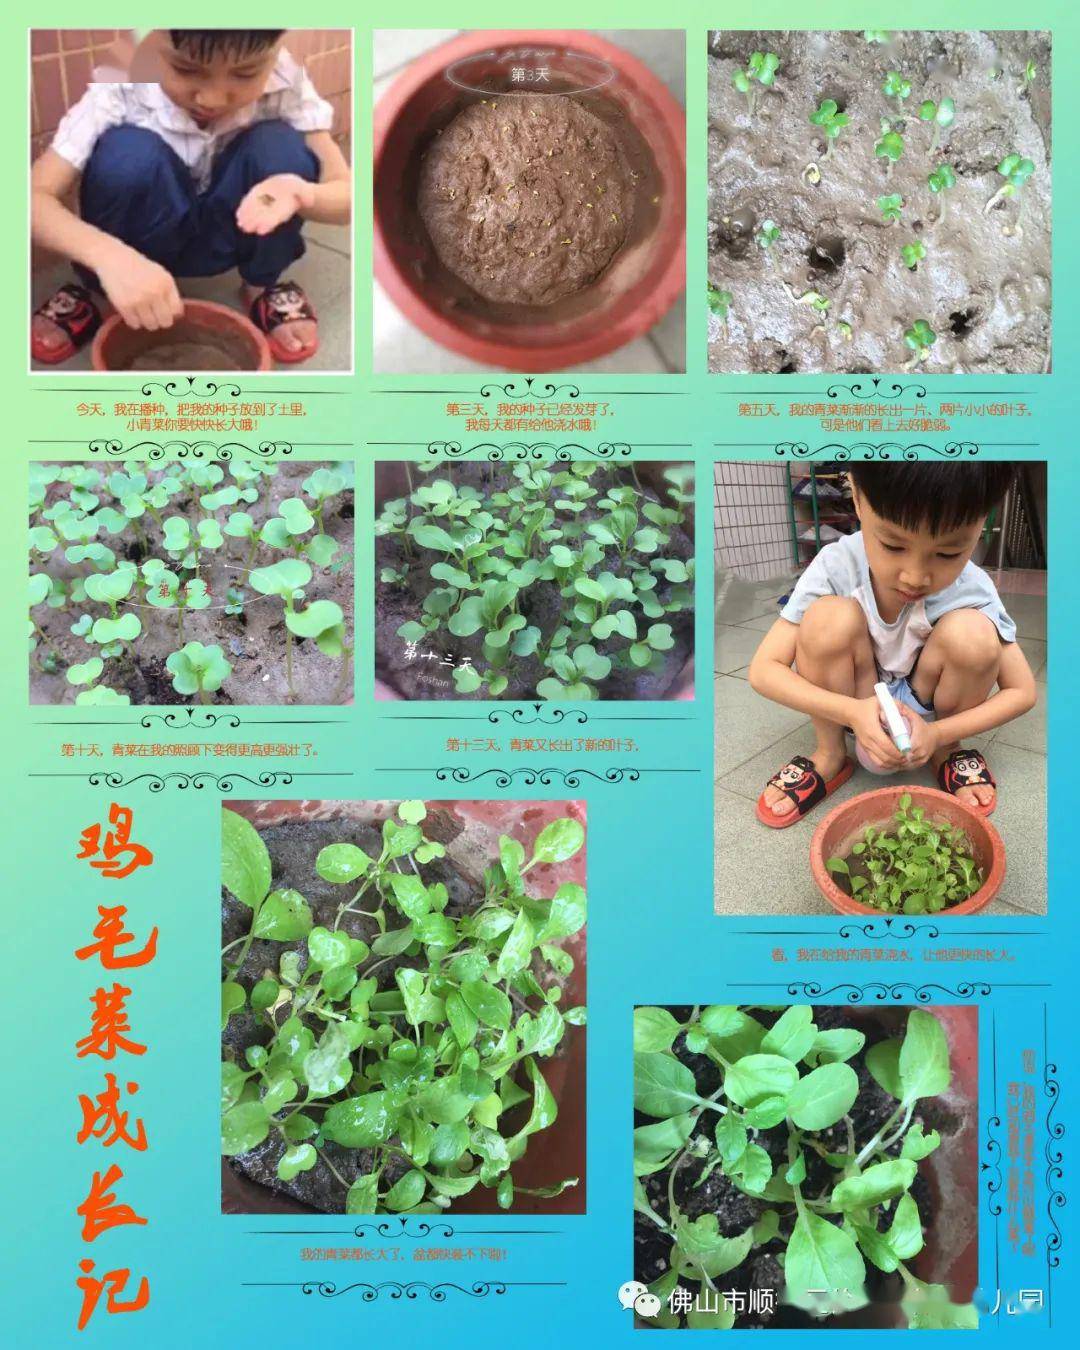 来到小菜园,小朋友们可以尝试播种灌溉,记录种子发芽生长的全过程